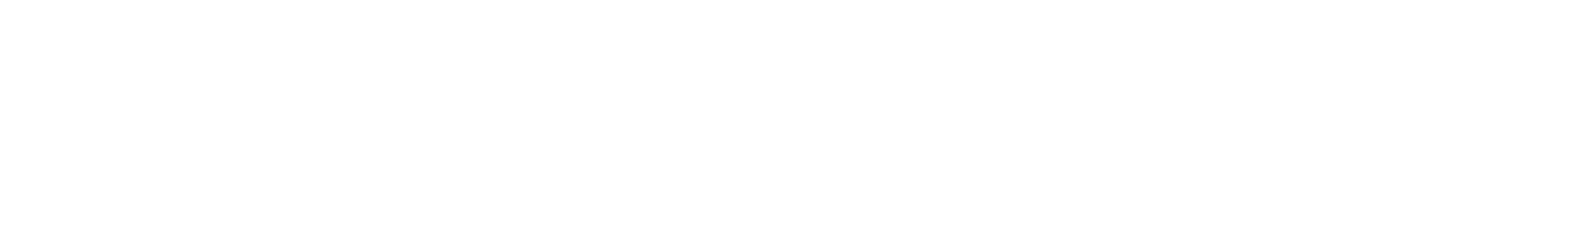 Haya Energy Solutions Logo